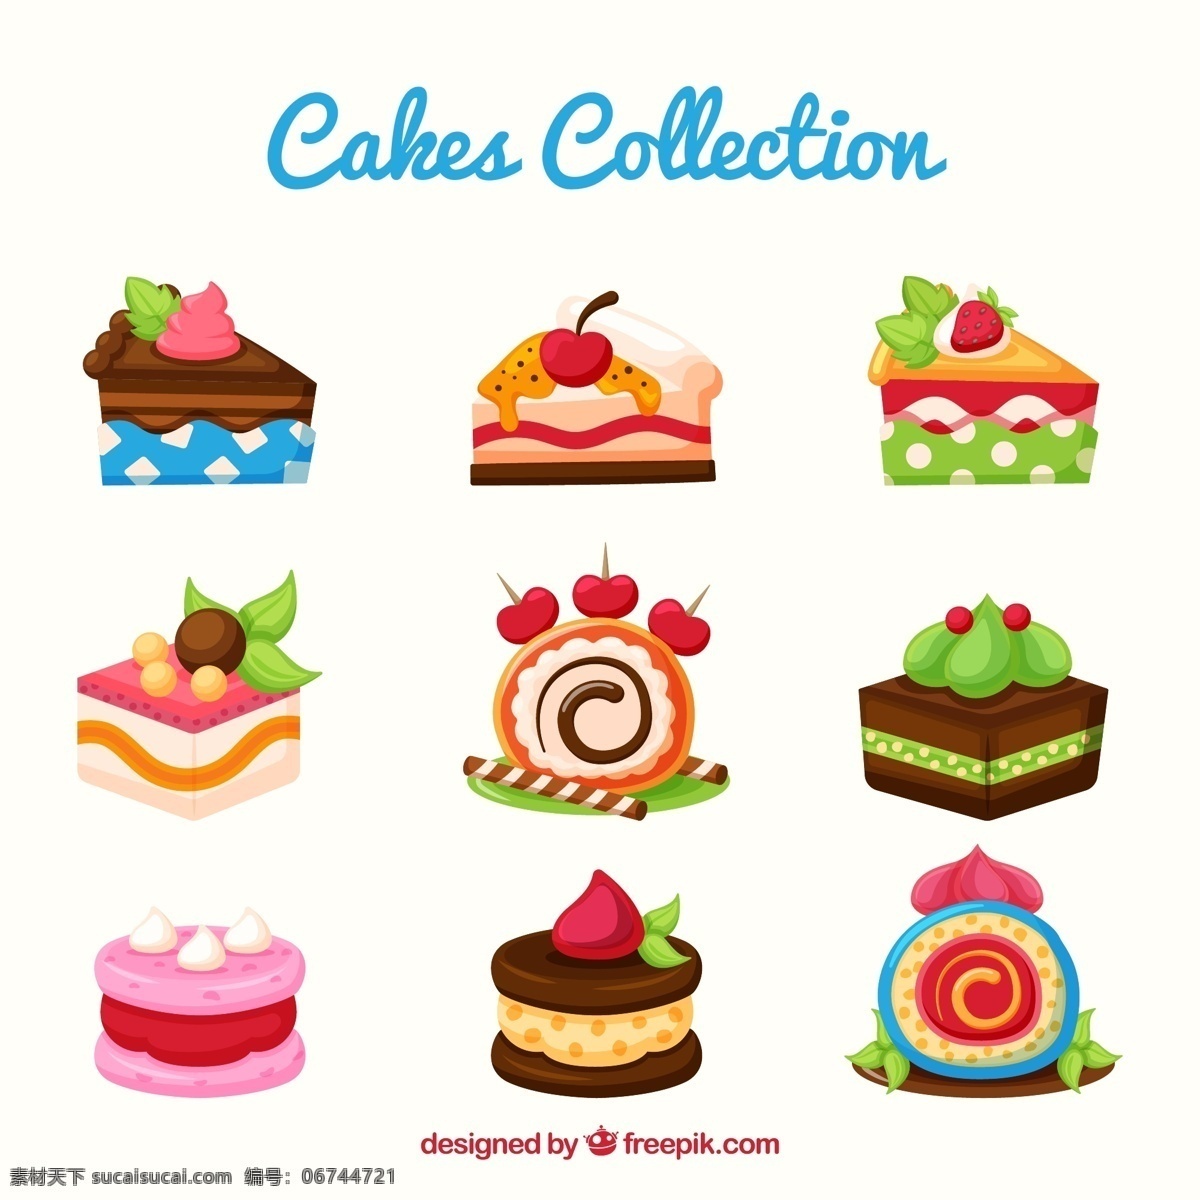 可爱蛋糕 卡通甜品 卡通 草莓 绿茶 奶油 巧克力 可爱 蛋糕 三角蛋糕 甜点 矢量图 生活百科 餐饮美食